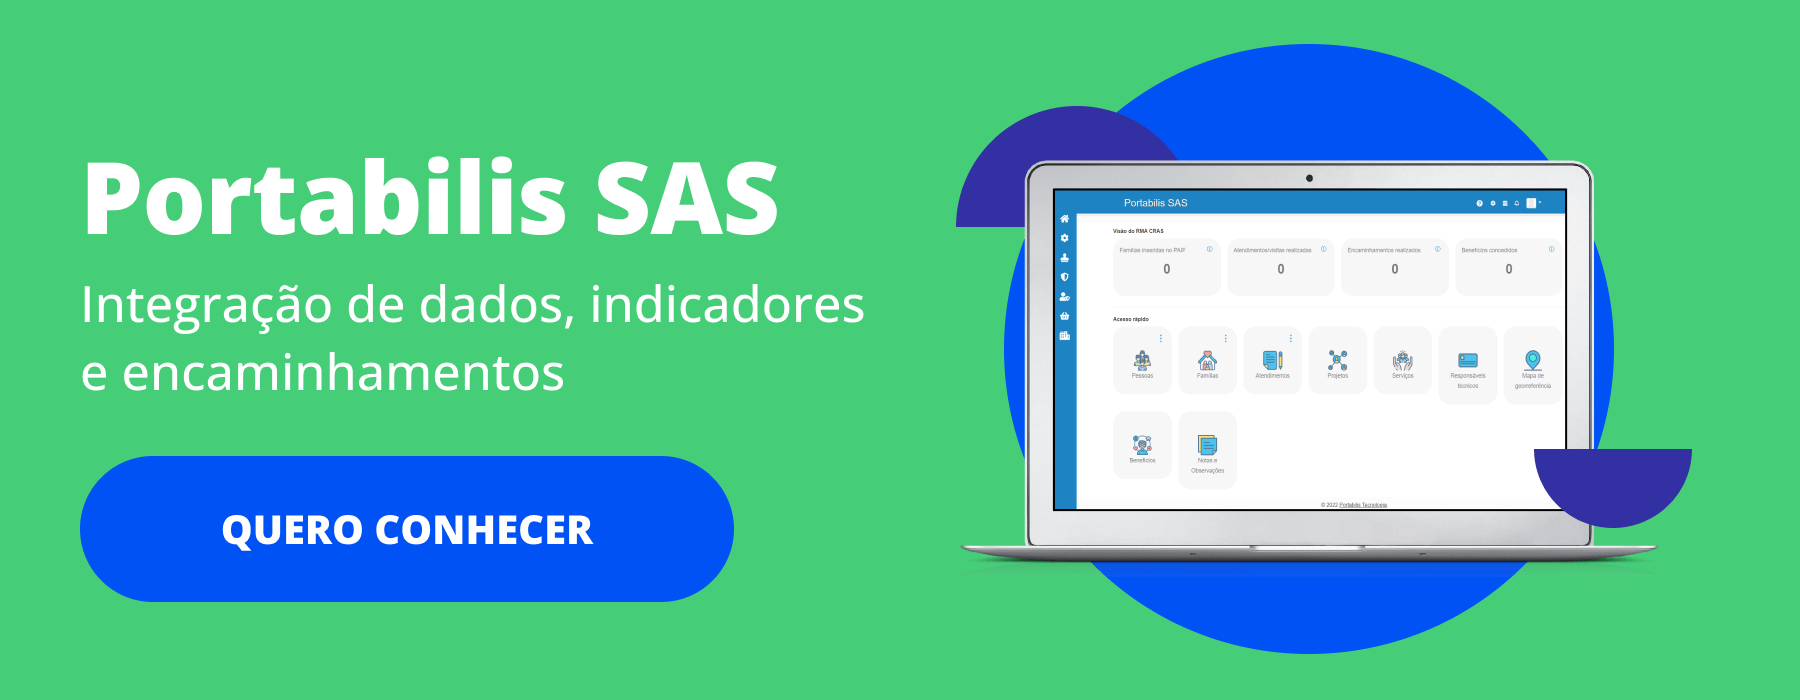 O Portabilis SAS é um software para Assistência Social que integra e dinamiza o trabalho das equipes de referência através do uso de tecnologia e dados confiáveis, possibilitando uma gestão mais inteligente, ágil e menos burocrática do SUAS no município.